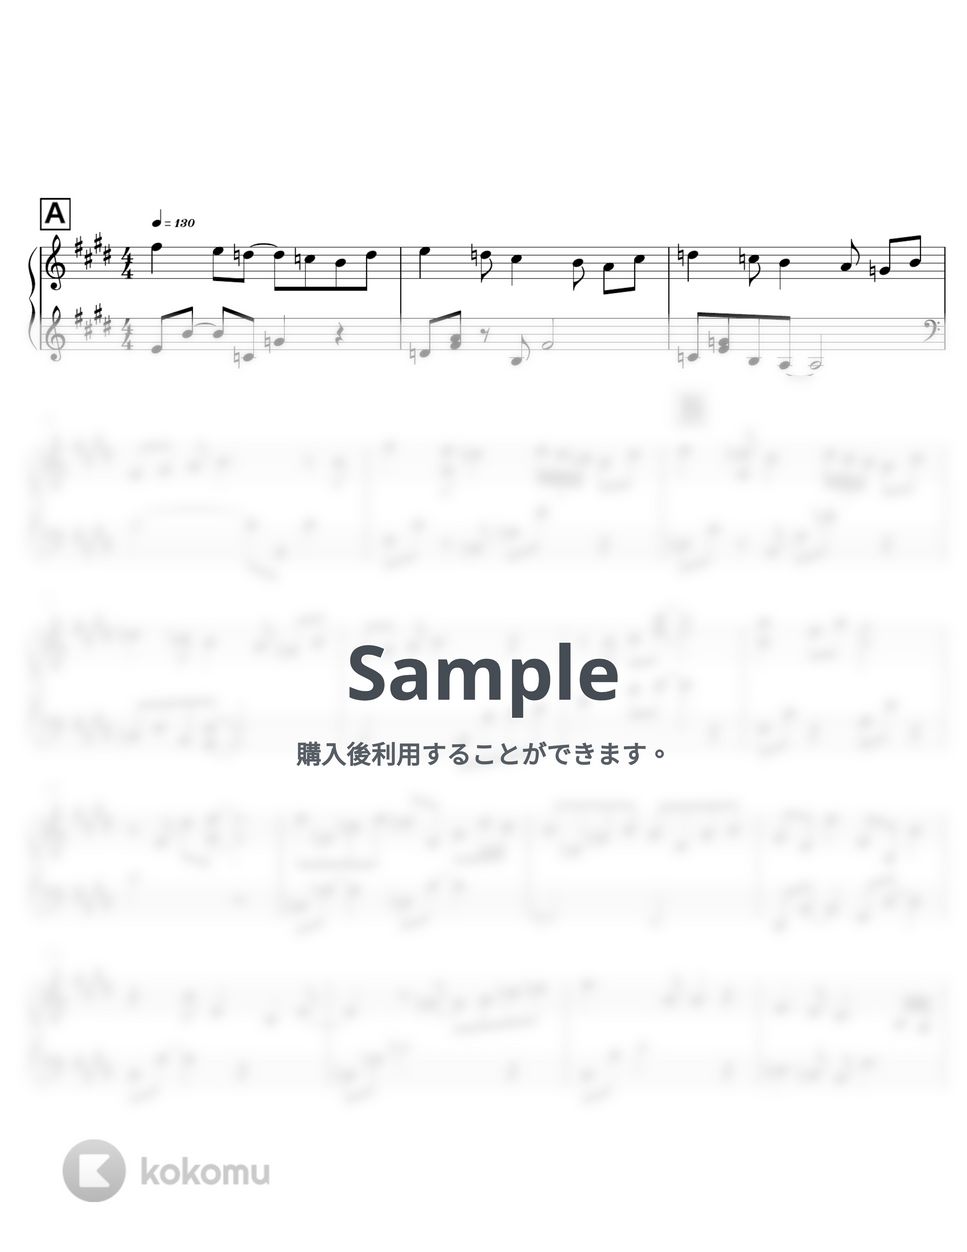 矢野顕子 - ひとつだけ (ピアノ伴奏 / 両手 / フル) by anytimepiano